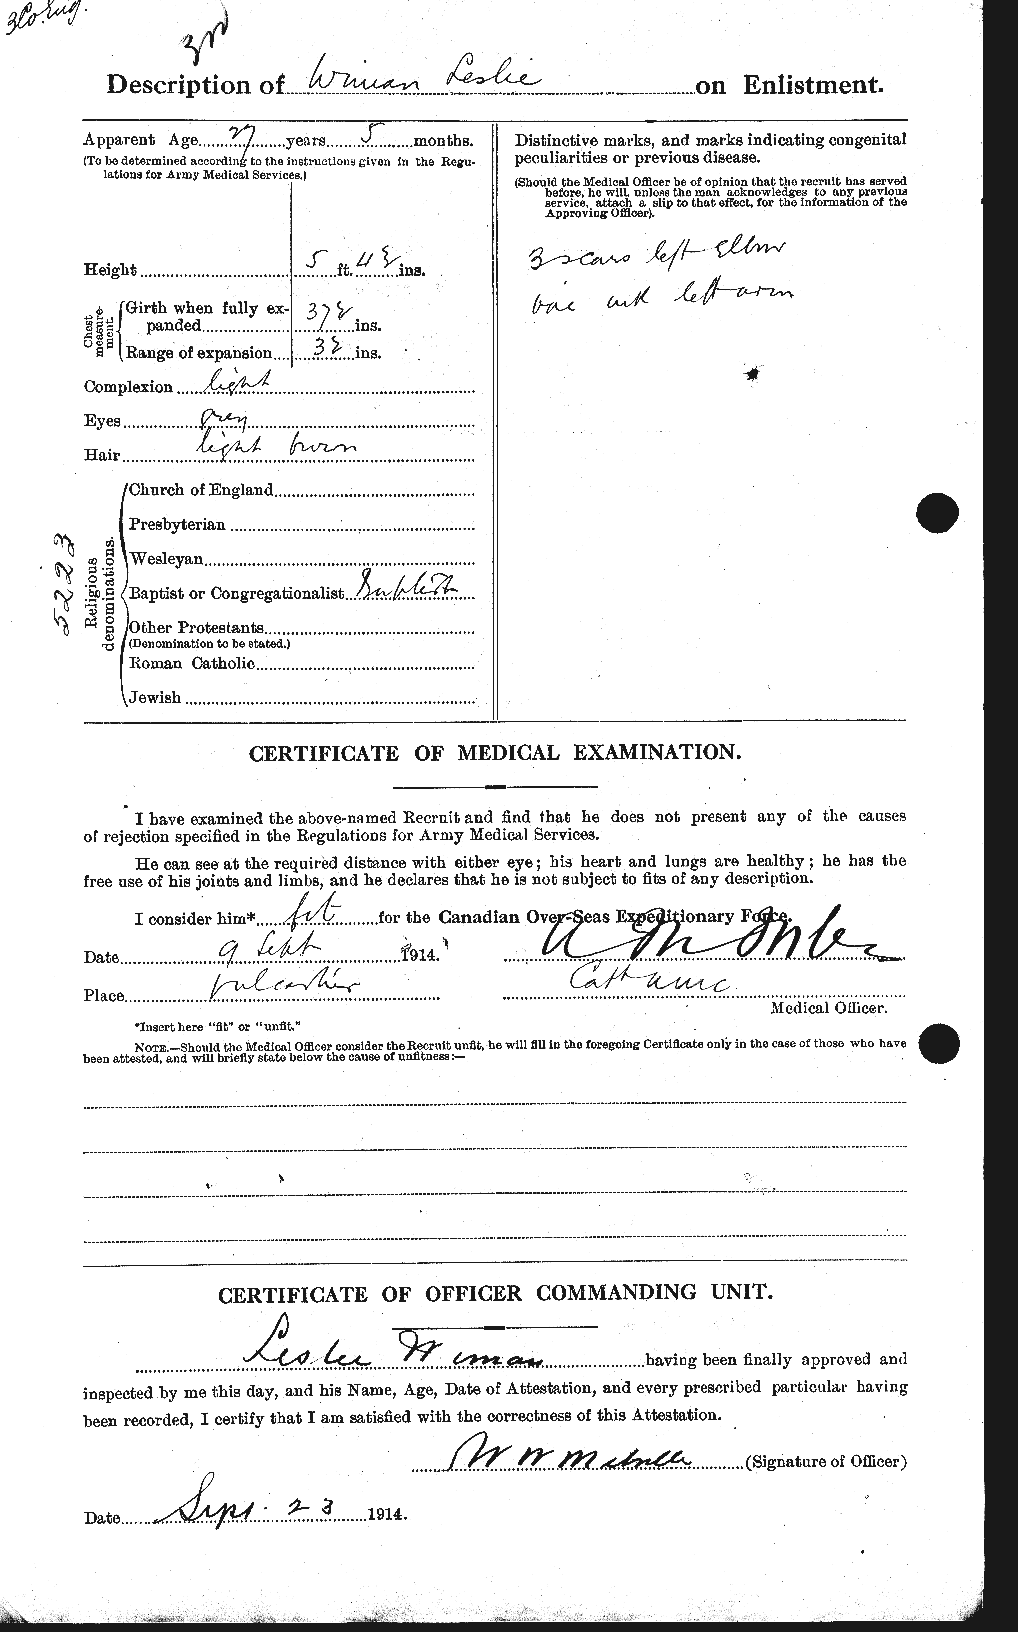 Dossiers du Personnel de la Première Guerre mondiale - CEC 667174b